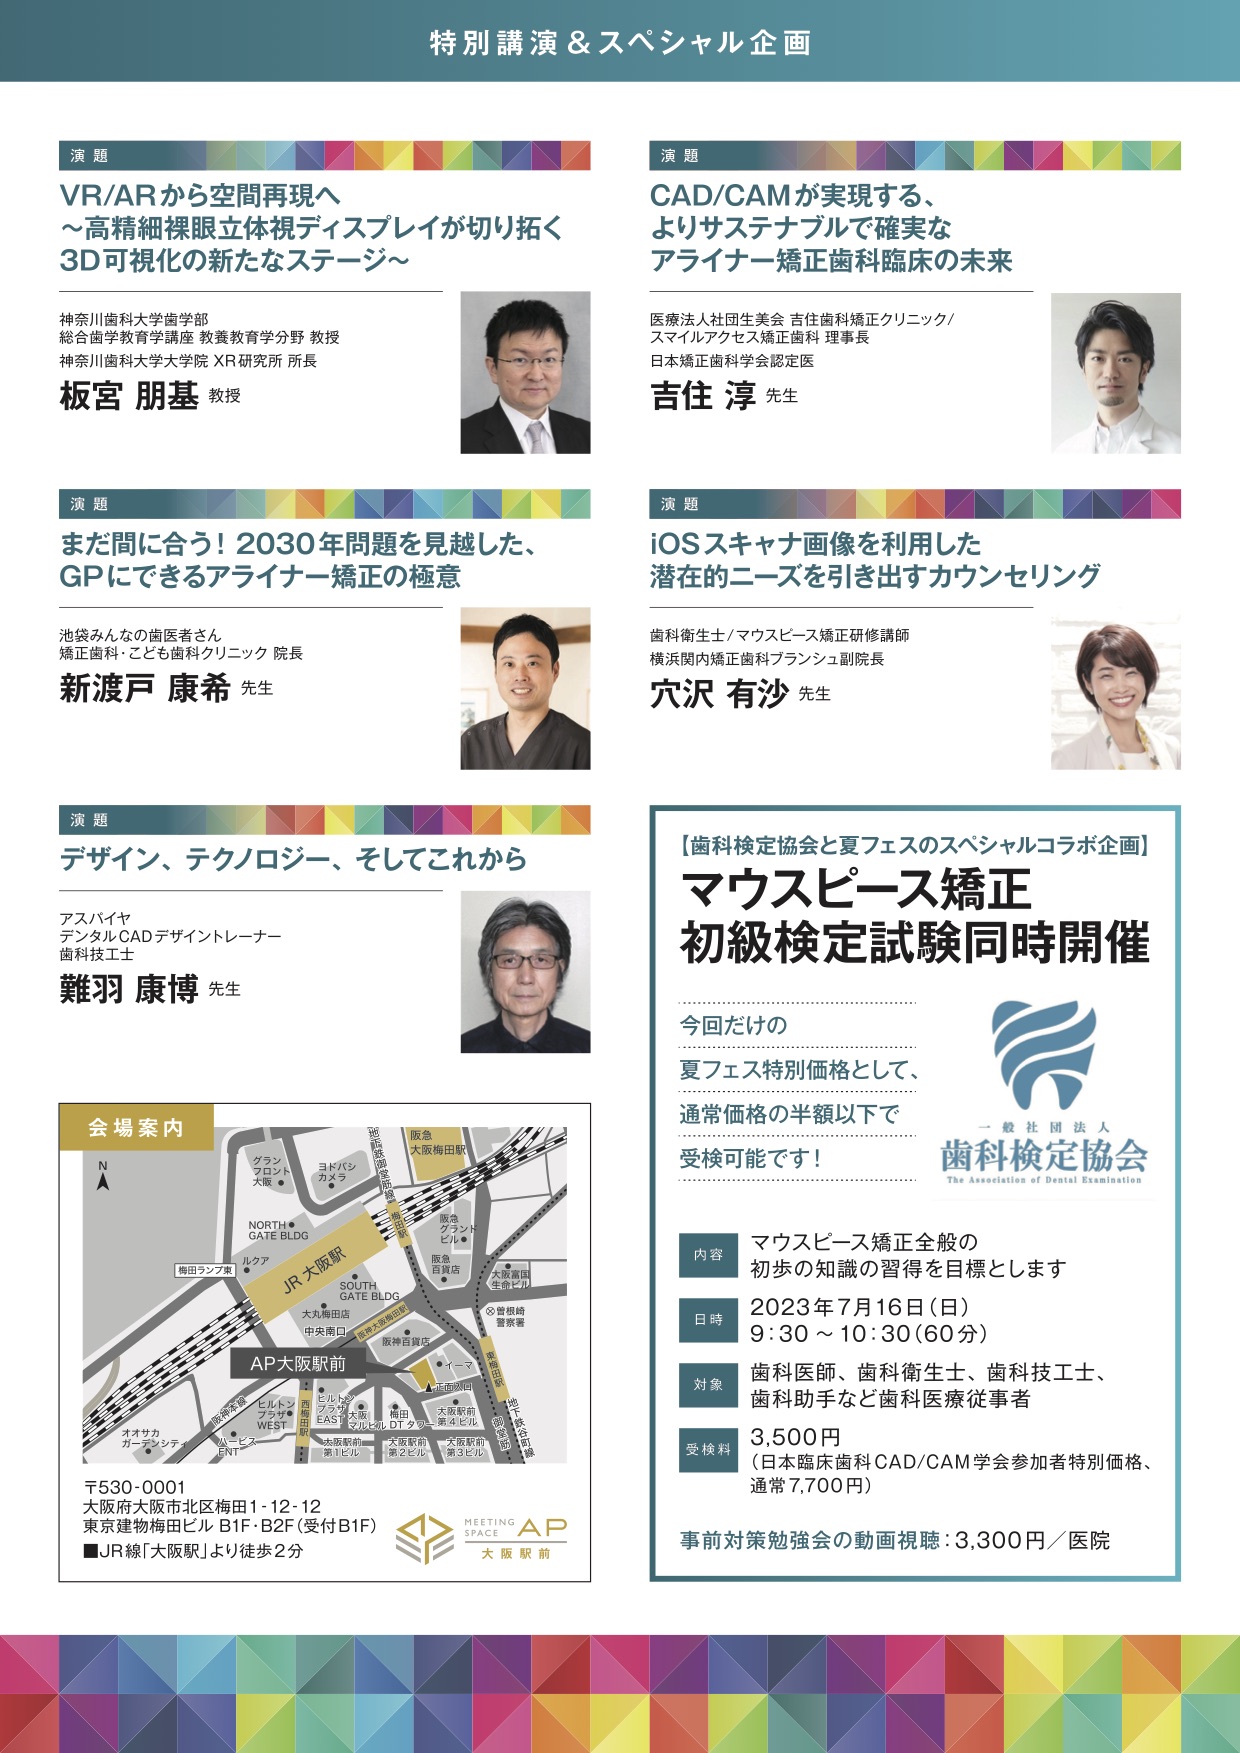 第3回日本臨床歯科 CADCAM学会サマーフェスティバル開催のお知らせ・裏面